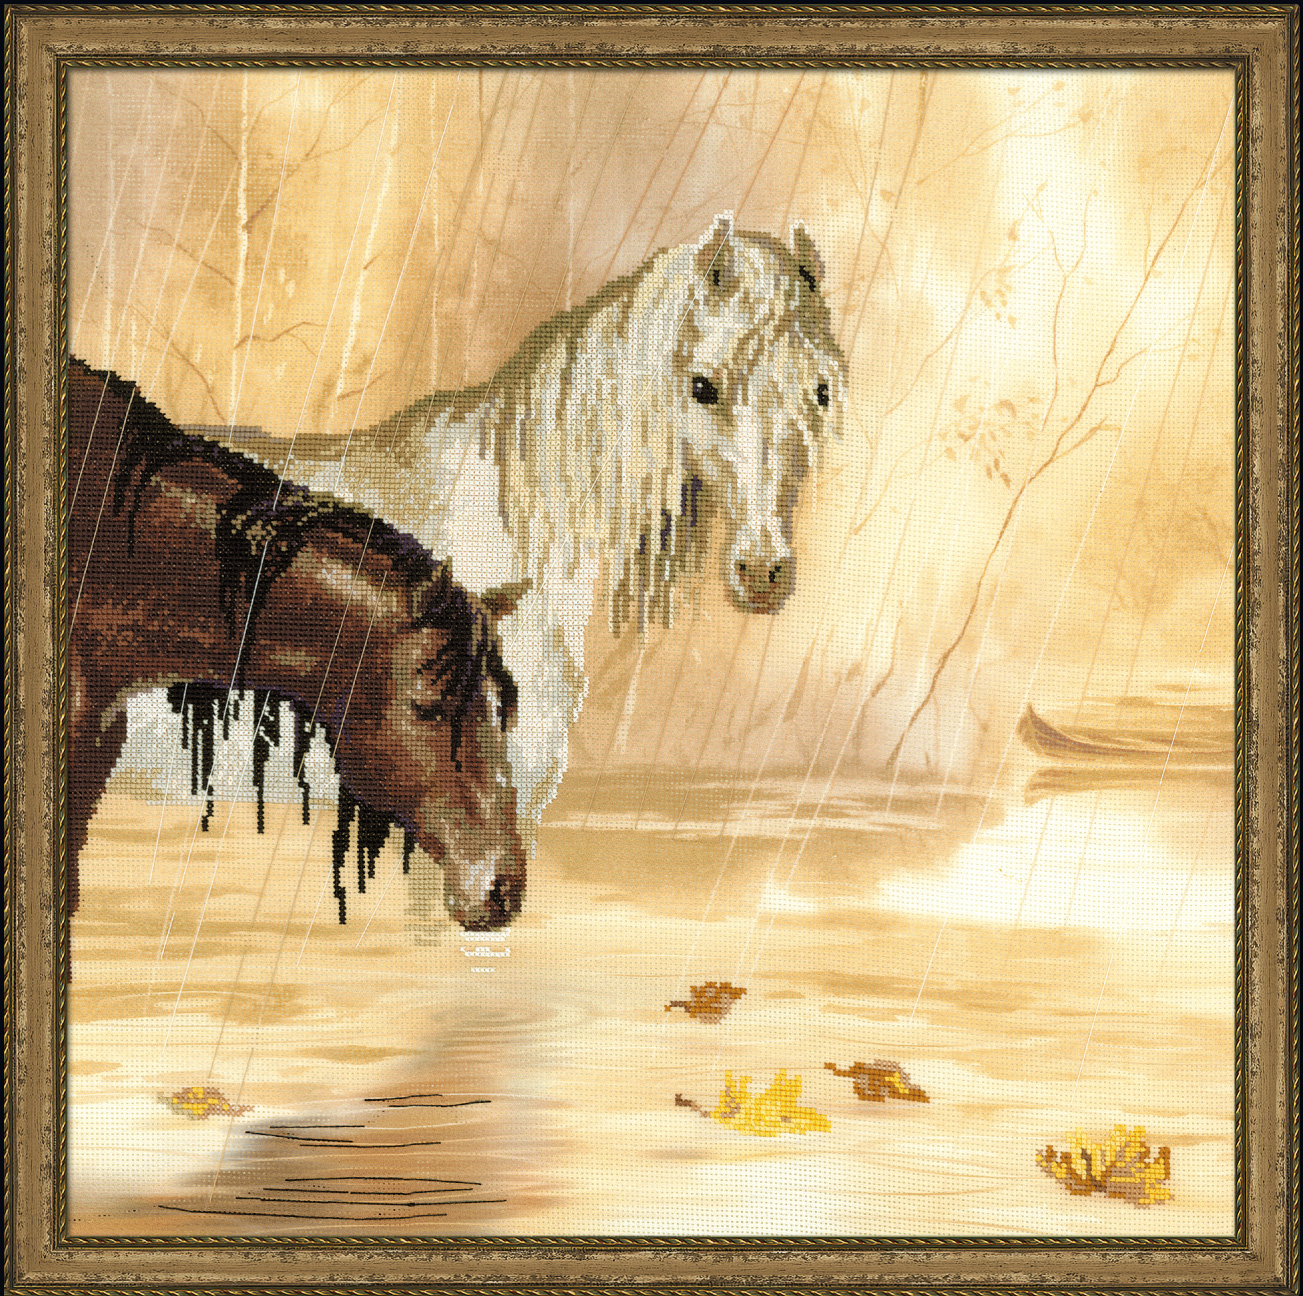 лошадь под дождем фото